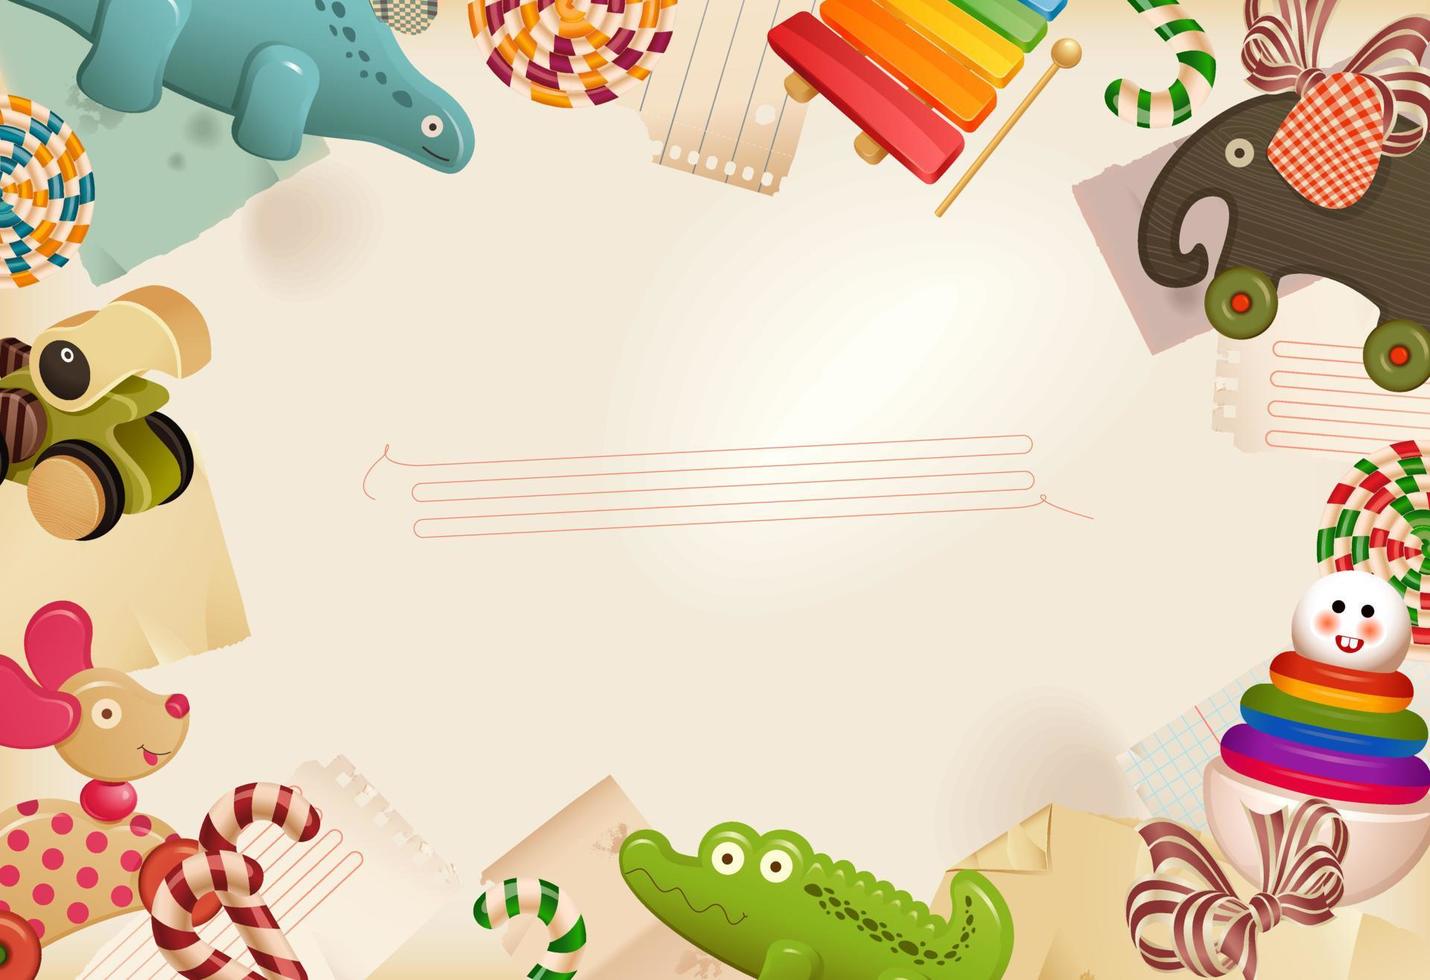 speelgoed, snoep en kinderjaren herinneringen - achtergrond vector